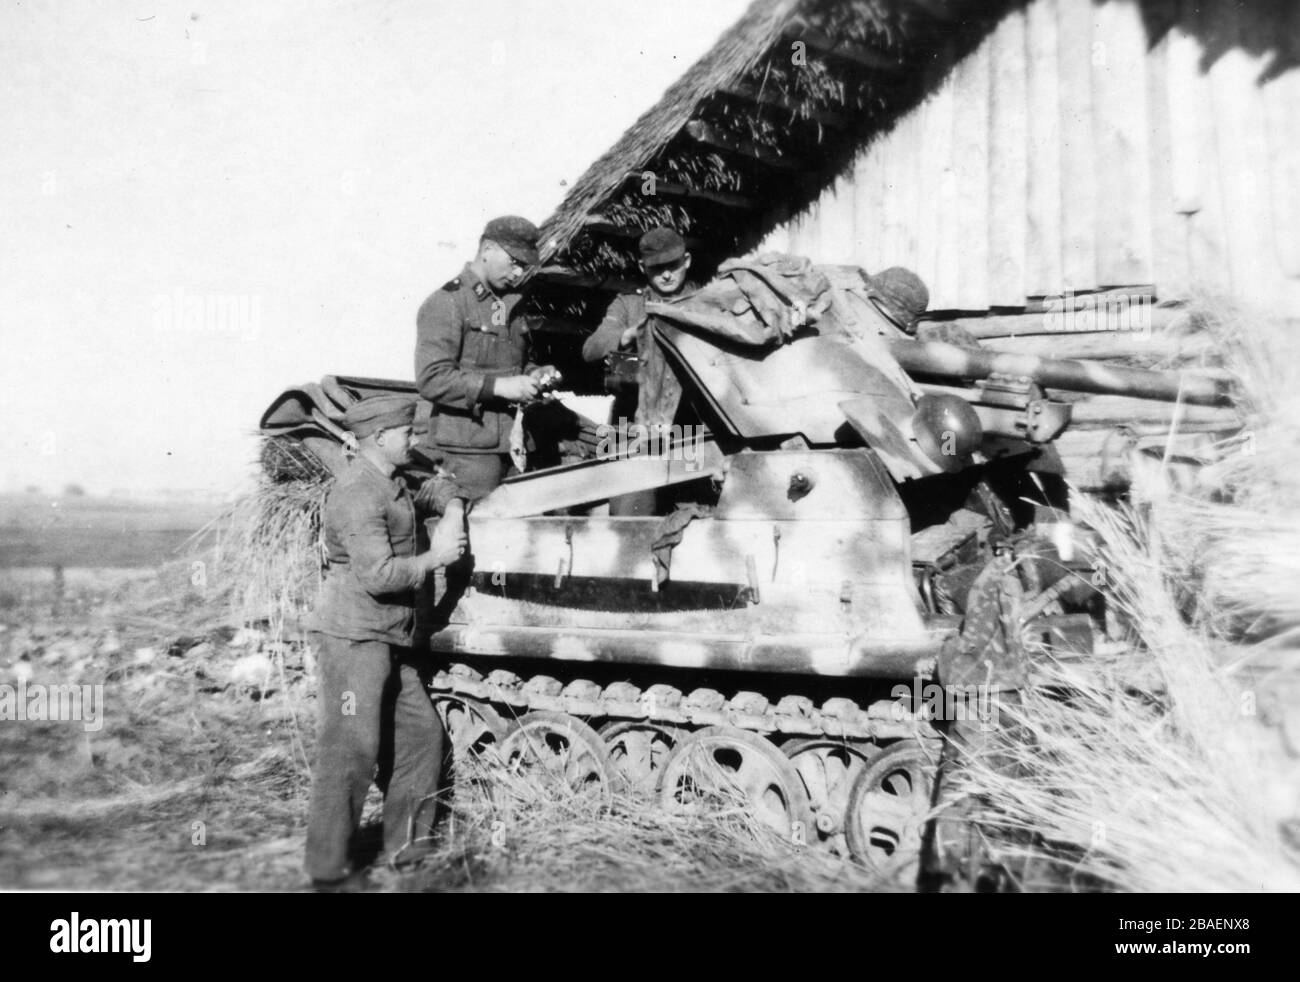 Seconde Guerre mondiale / WWII photo historique sur l'invasion allemande - Waffen SS troopers en URSS - 1942 - 43 Banque D'Images